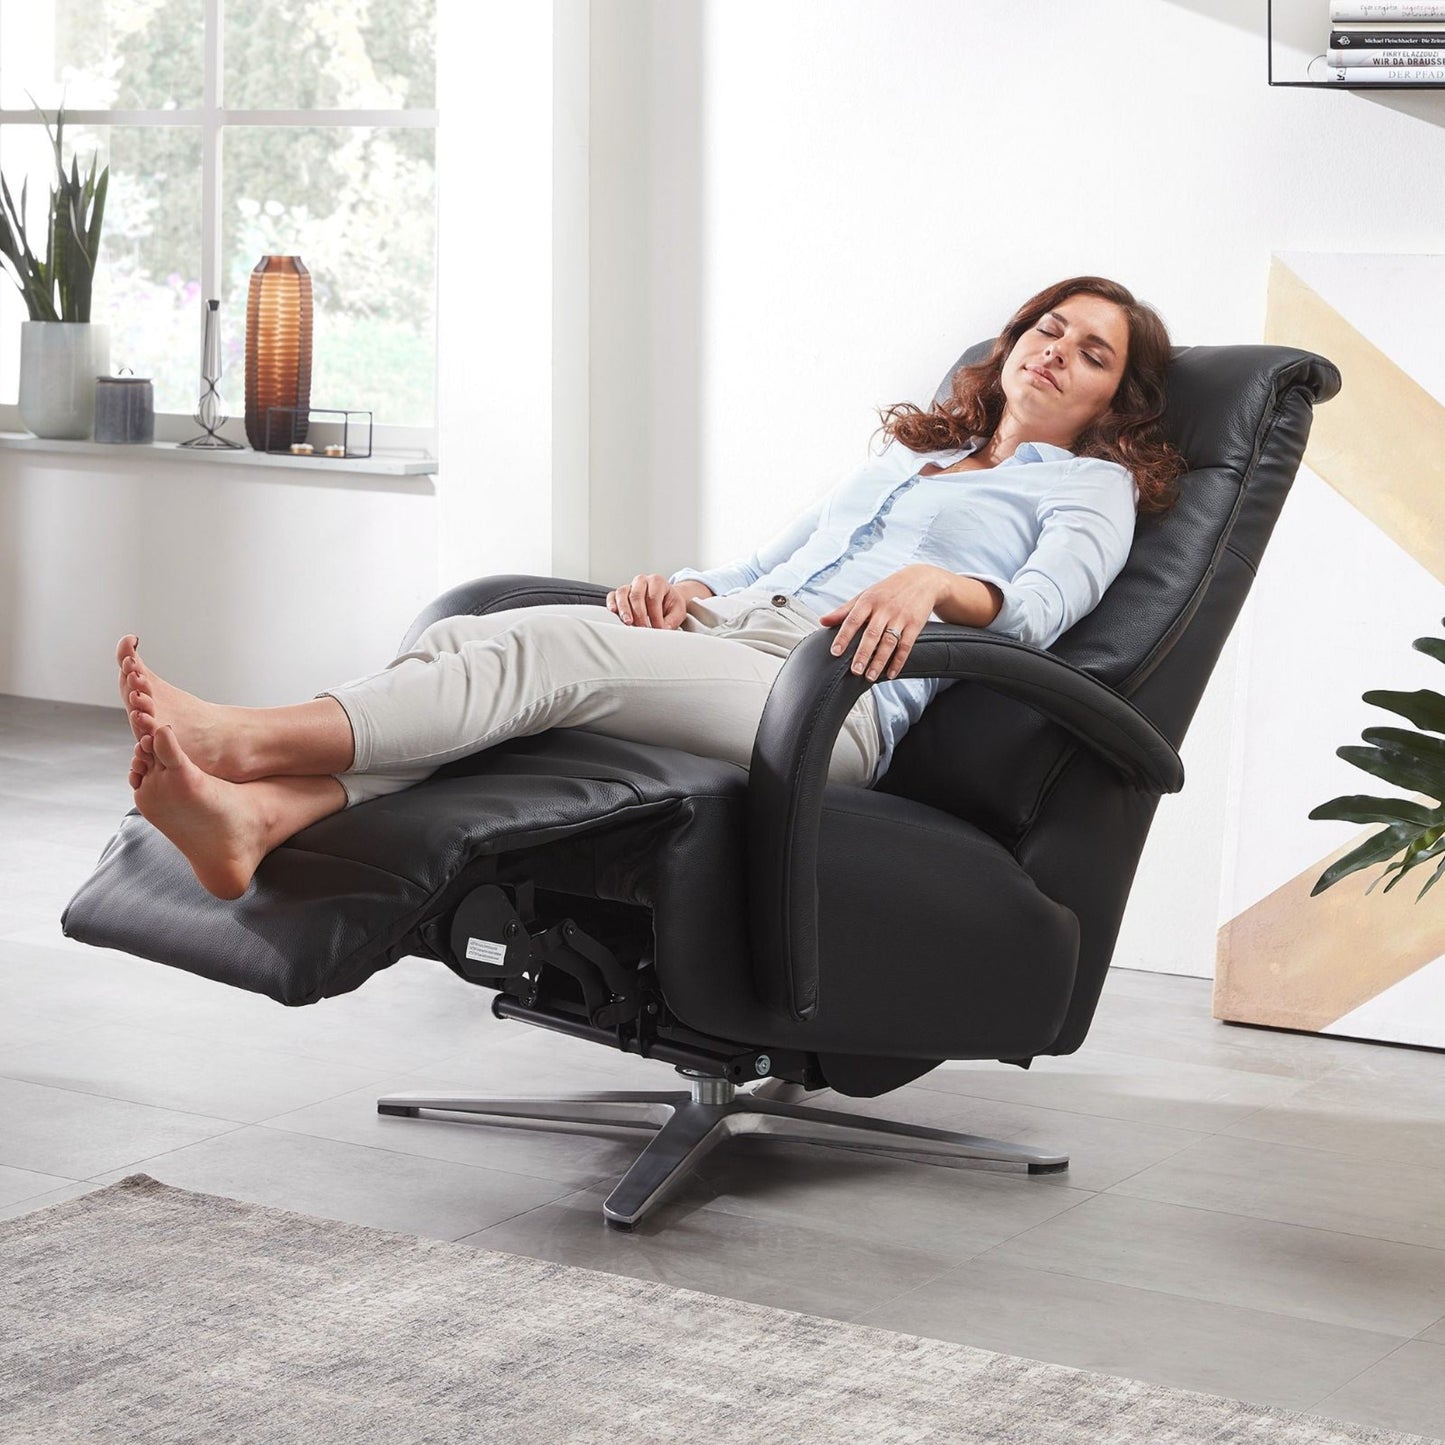 Leder Relaxsessel "Zürich" mit integriertem Akku und Aufstehhilfe - Sessel von meinRelaxsessel.de - Nur 1099 €! Kaufe jetzt bei meinRelaxsessel.de